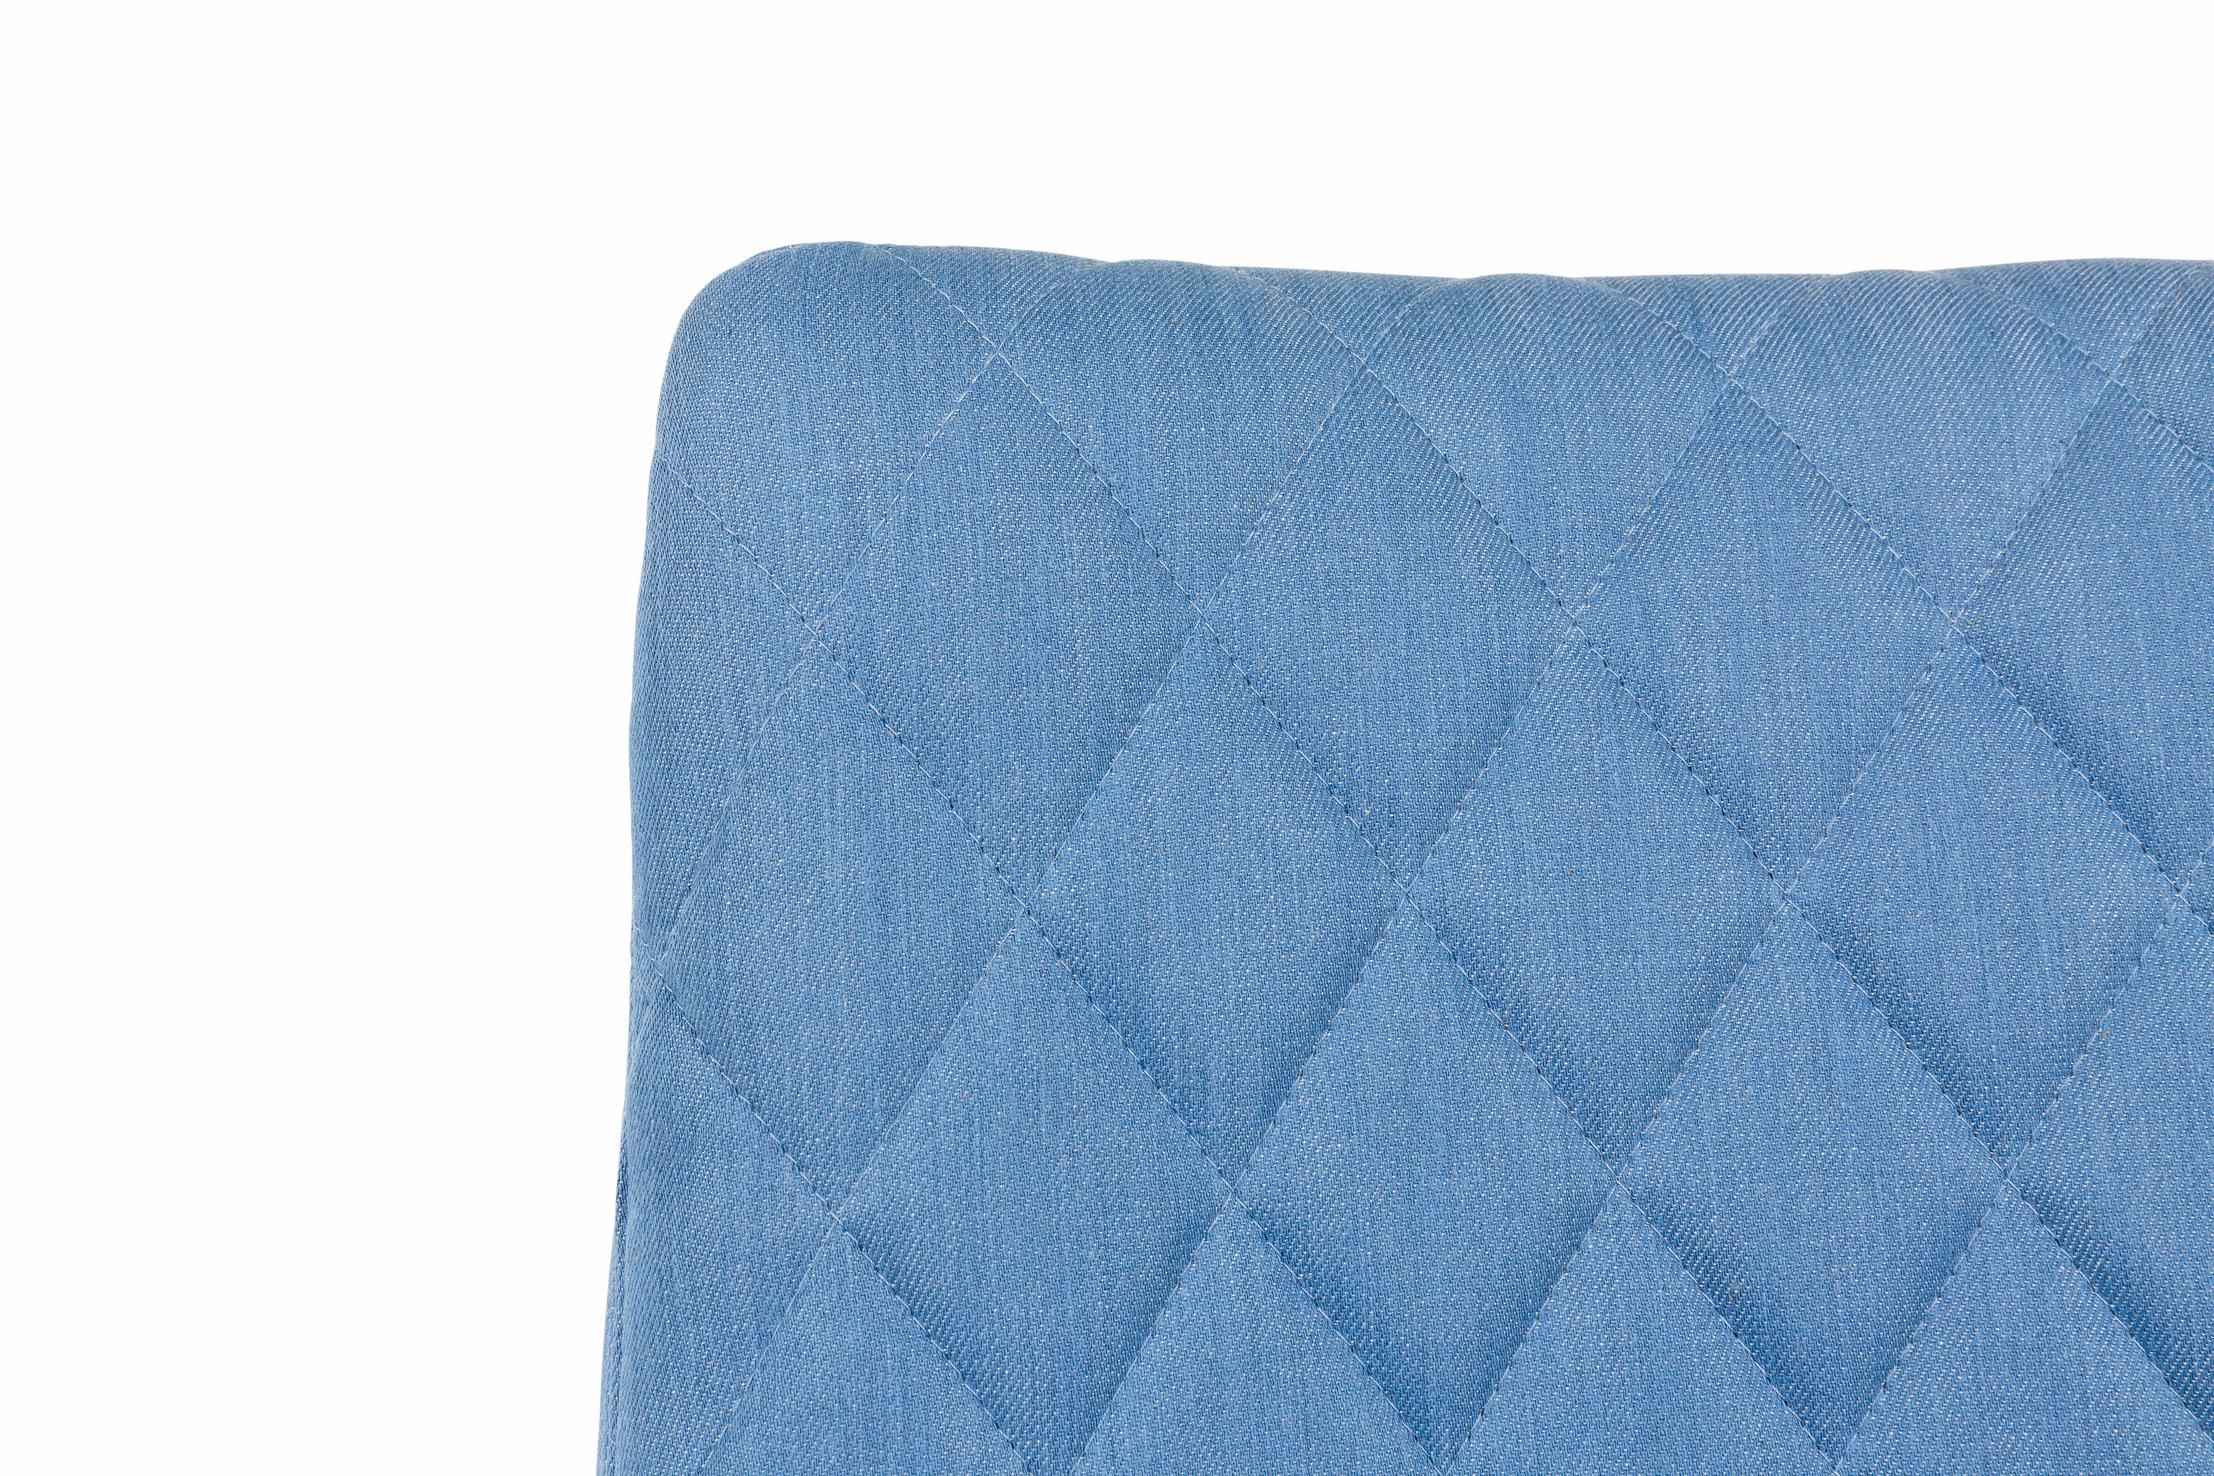 Modern Moooi Monster Diamond Chair in Denim Light Wash Blue Upholstery For Sale